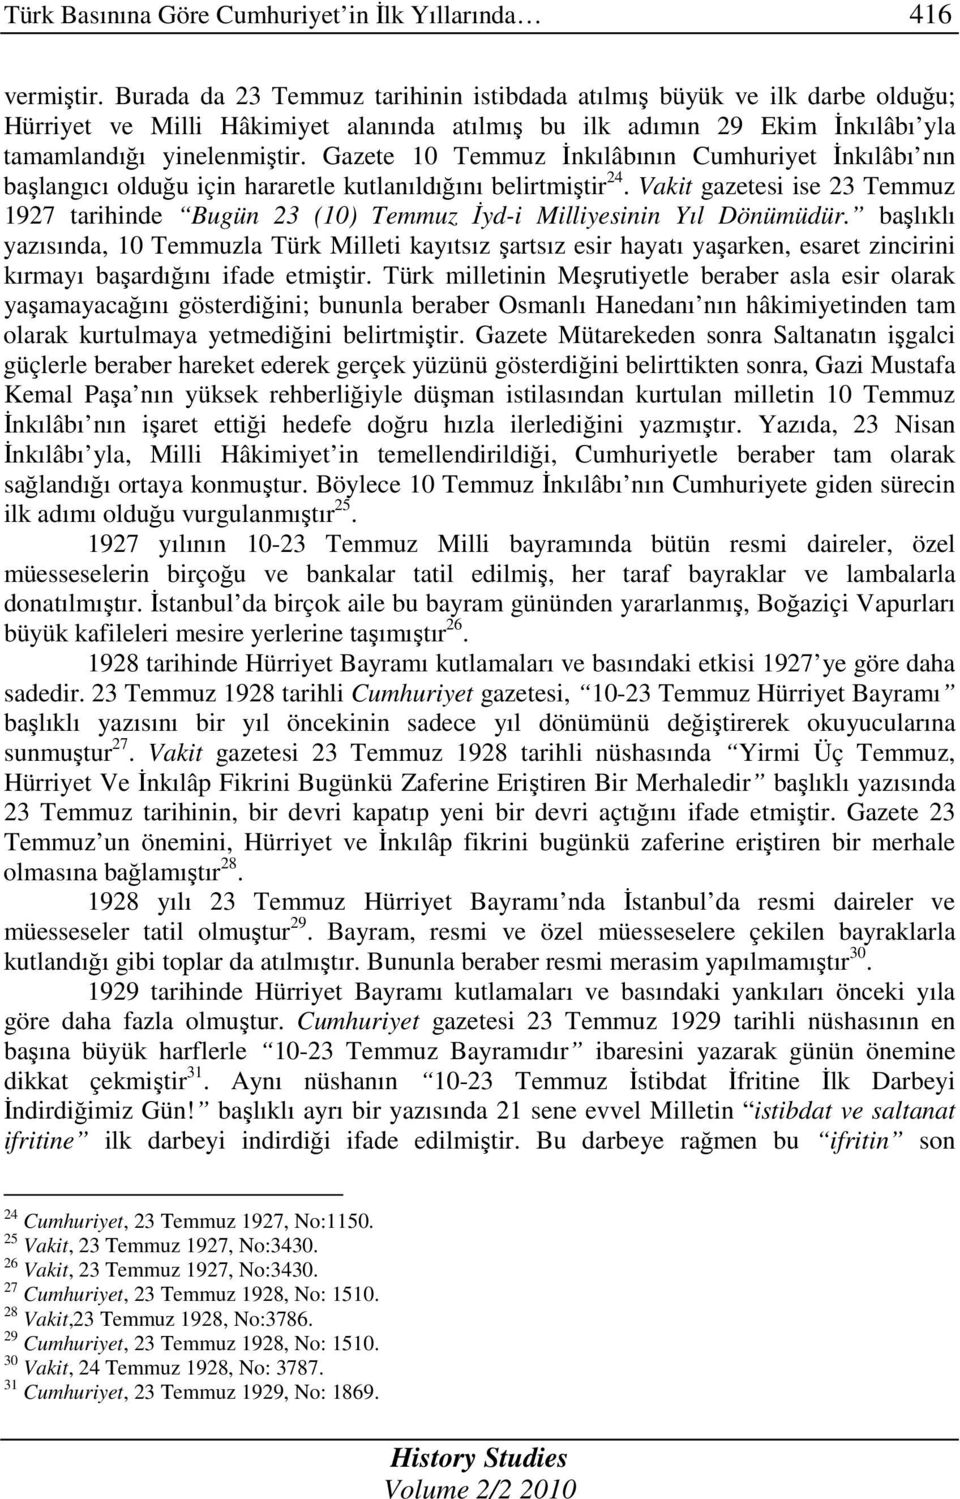 Gazete 10 Temmuz Đnkılâbının Cumhuriyet Đnkılâbı nın başlangıcı olduğu için hararetle kutlanıldığını belirtmiştir 24.